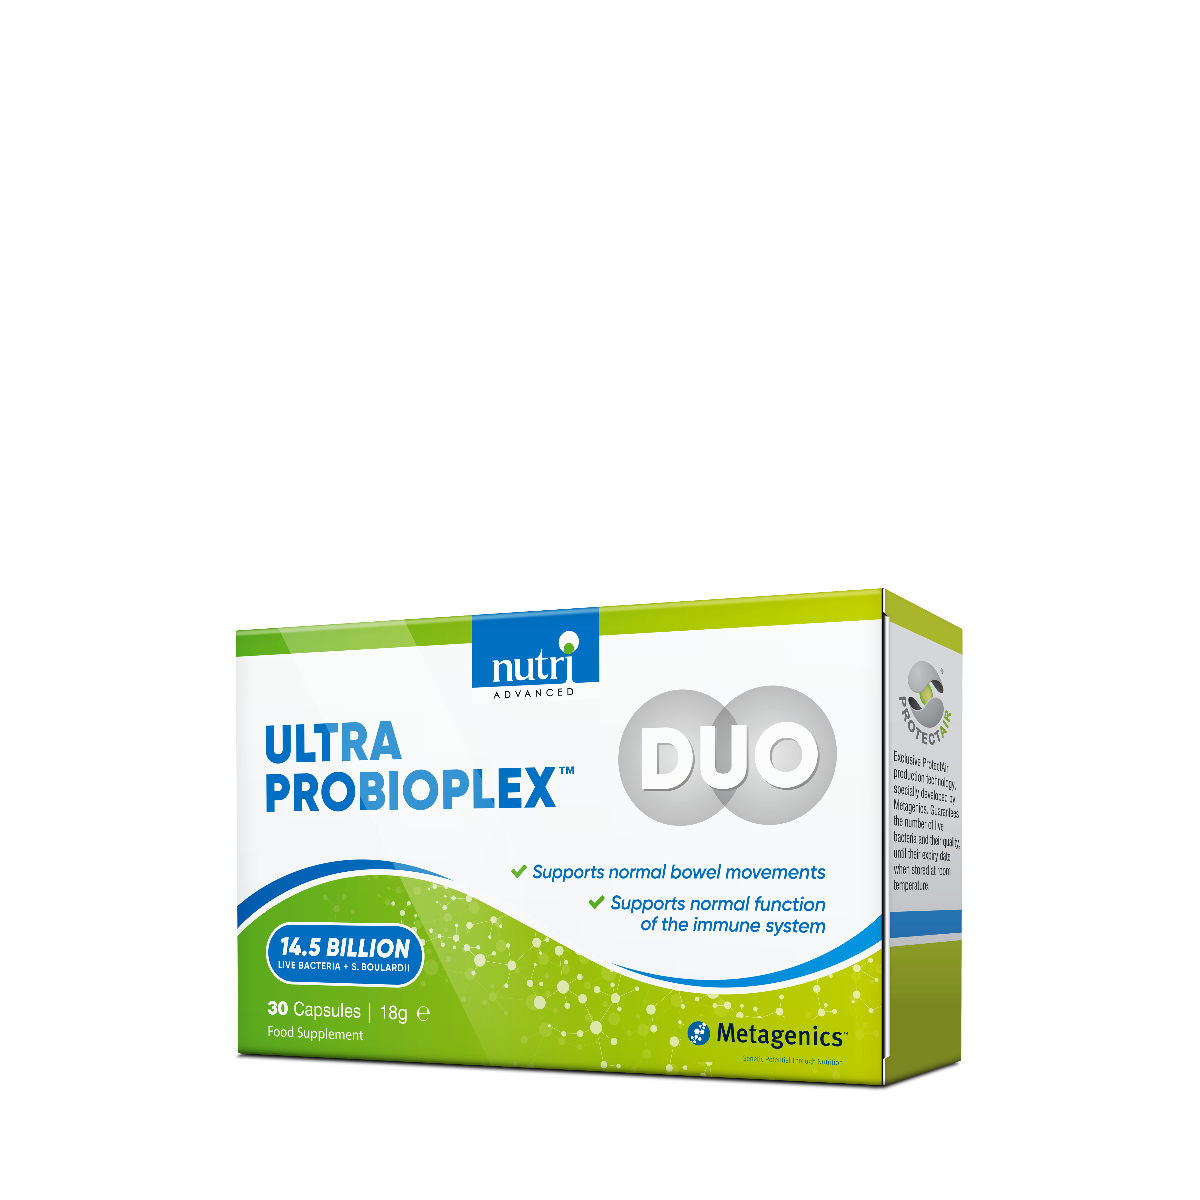 Ultra Probioplex Duo - 30 Capsules | Nutri Advanced